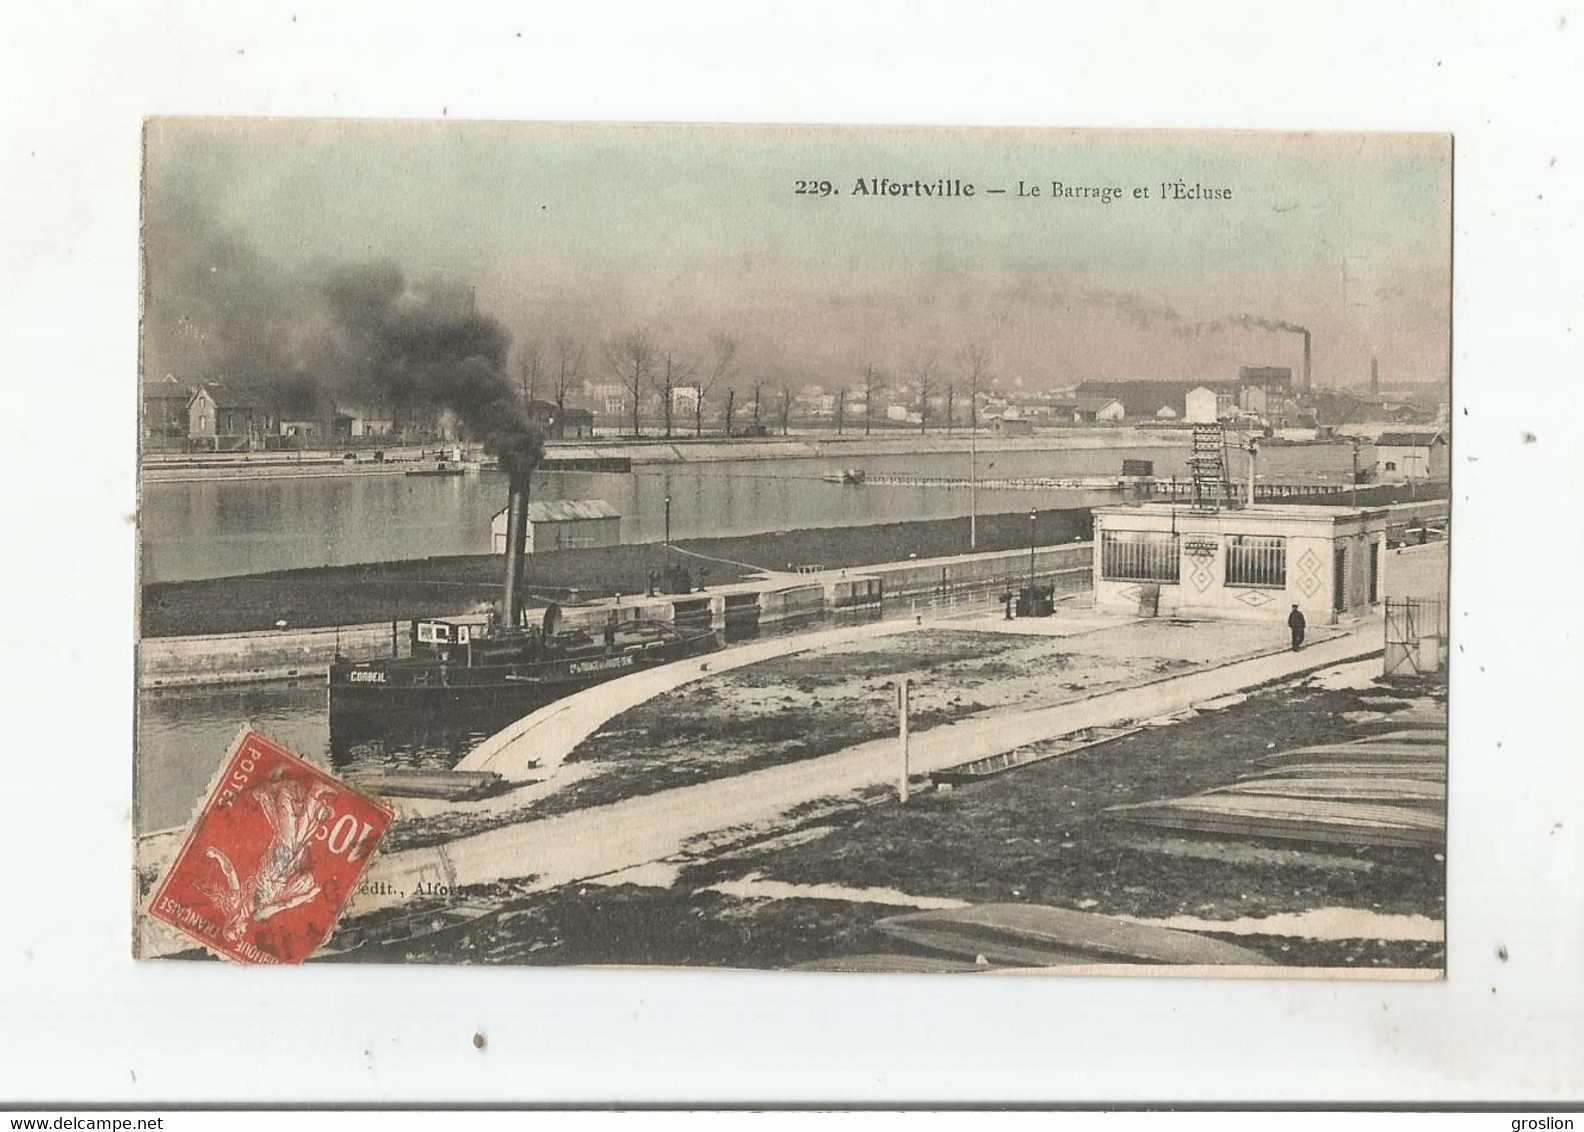 ALFORTVILLE 229 LE BARRAGE ET L'ECLUSE 1909 - Alfortville